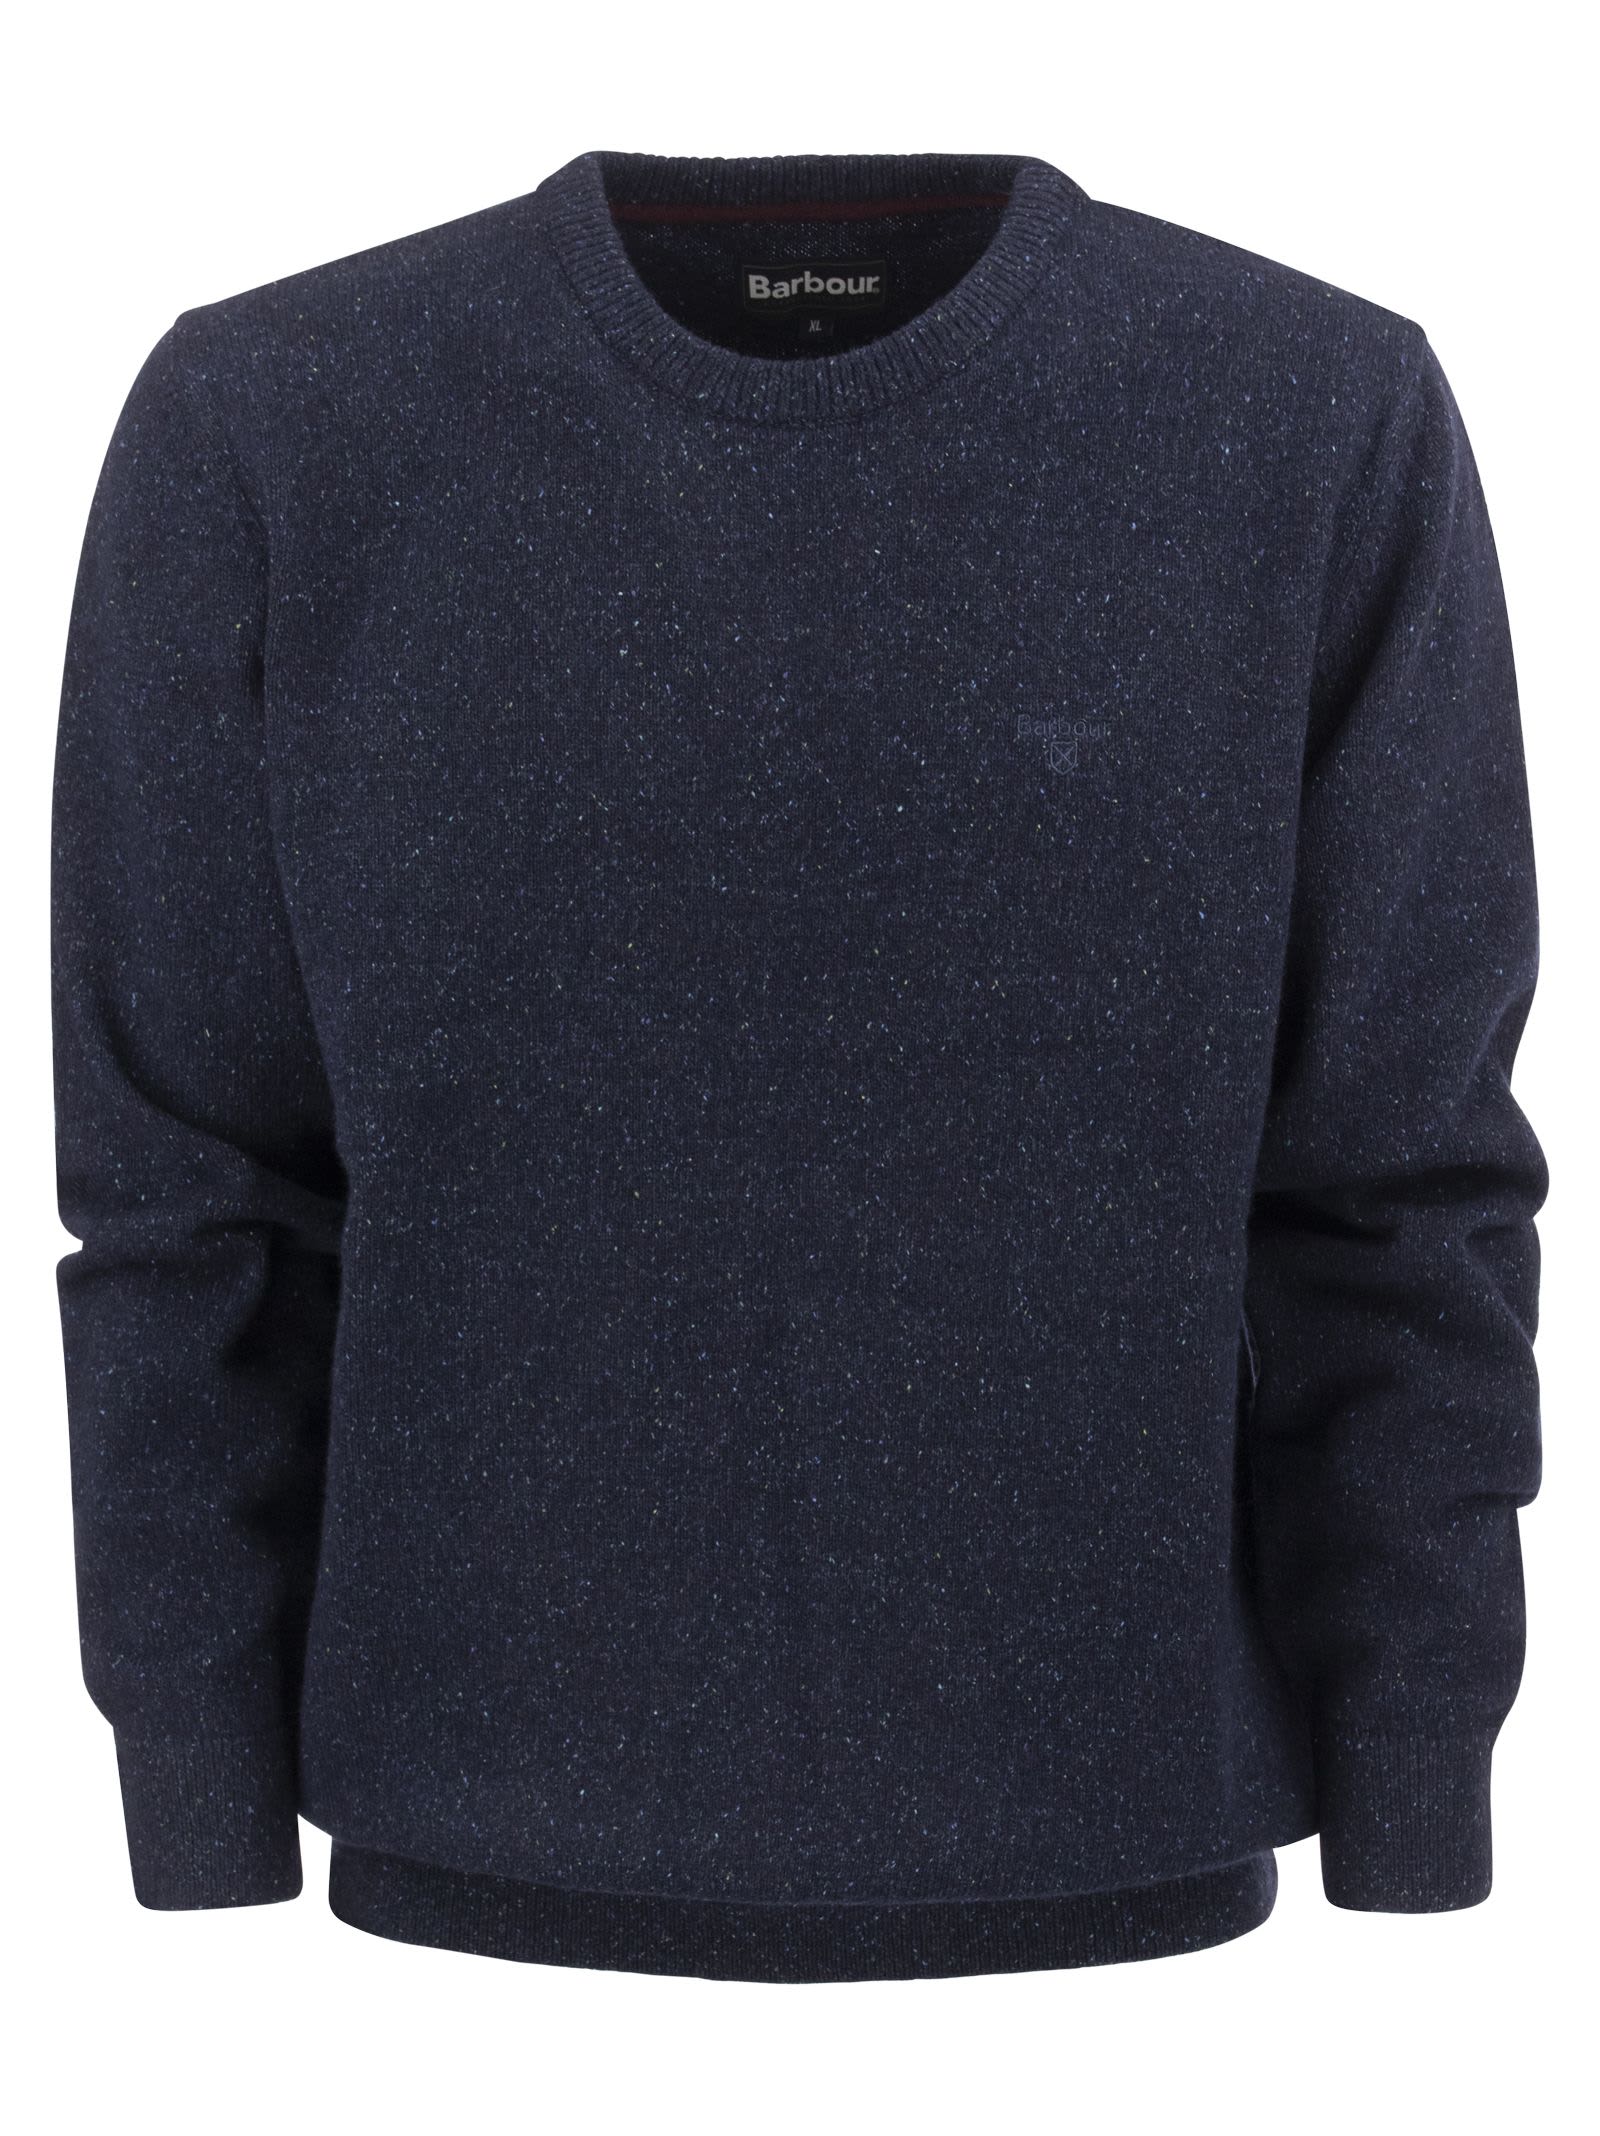 Barbour Essential - Crew Neck Sweater